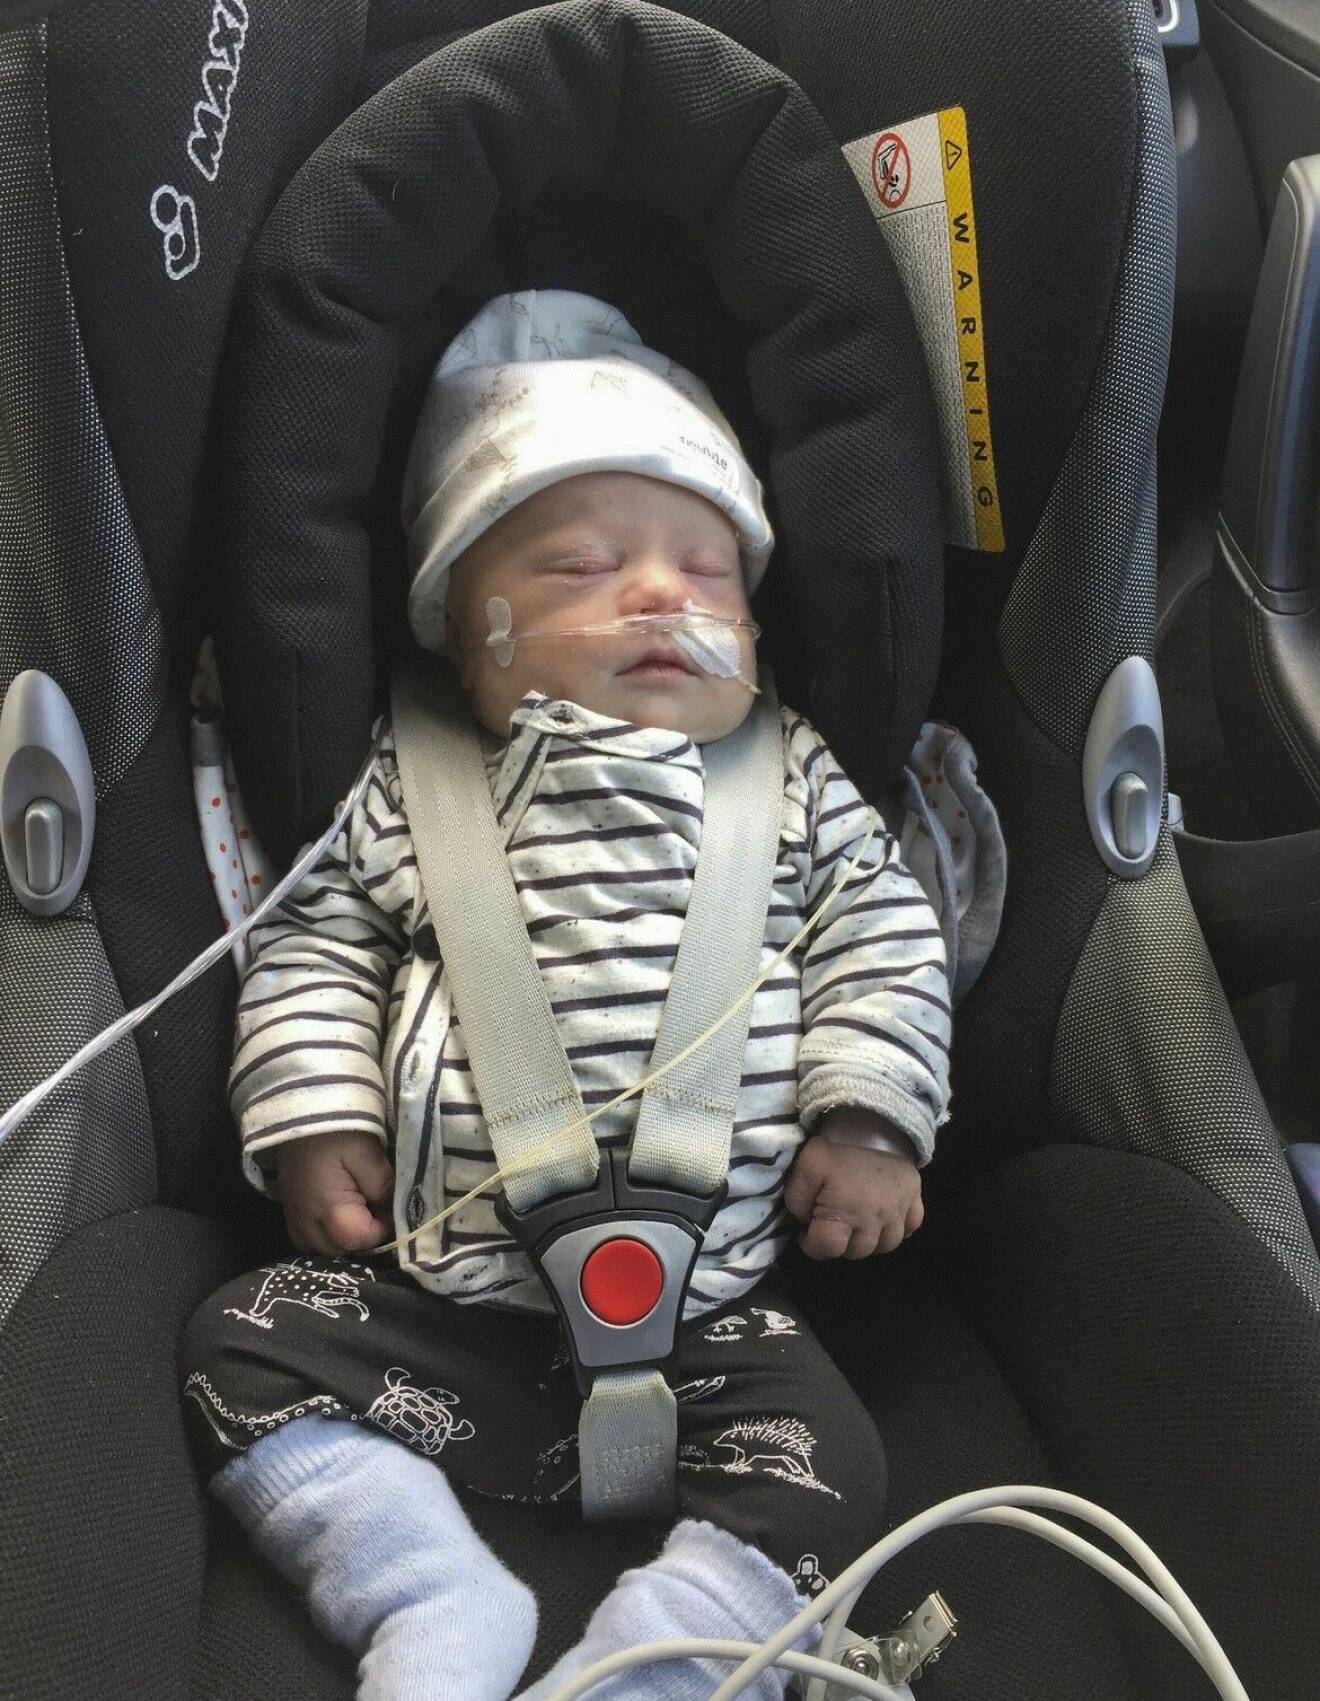 Nyfödde Svante, med Downs syndrom, ligger och sover i en bilbarnstol. Han har på sig en randig tröja och en vit mössa.